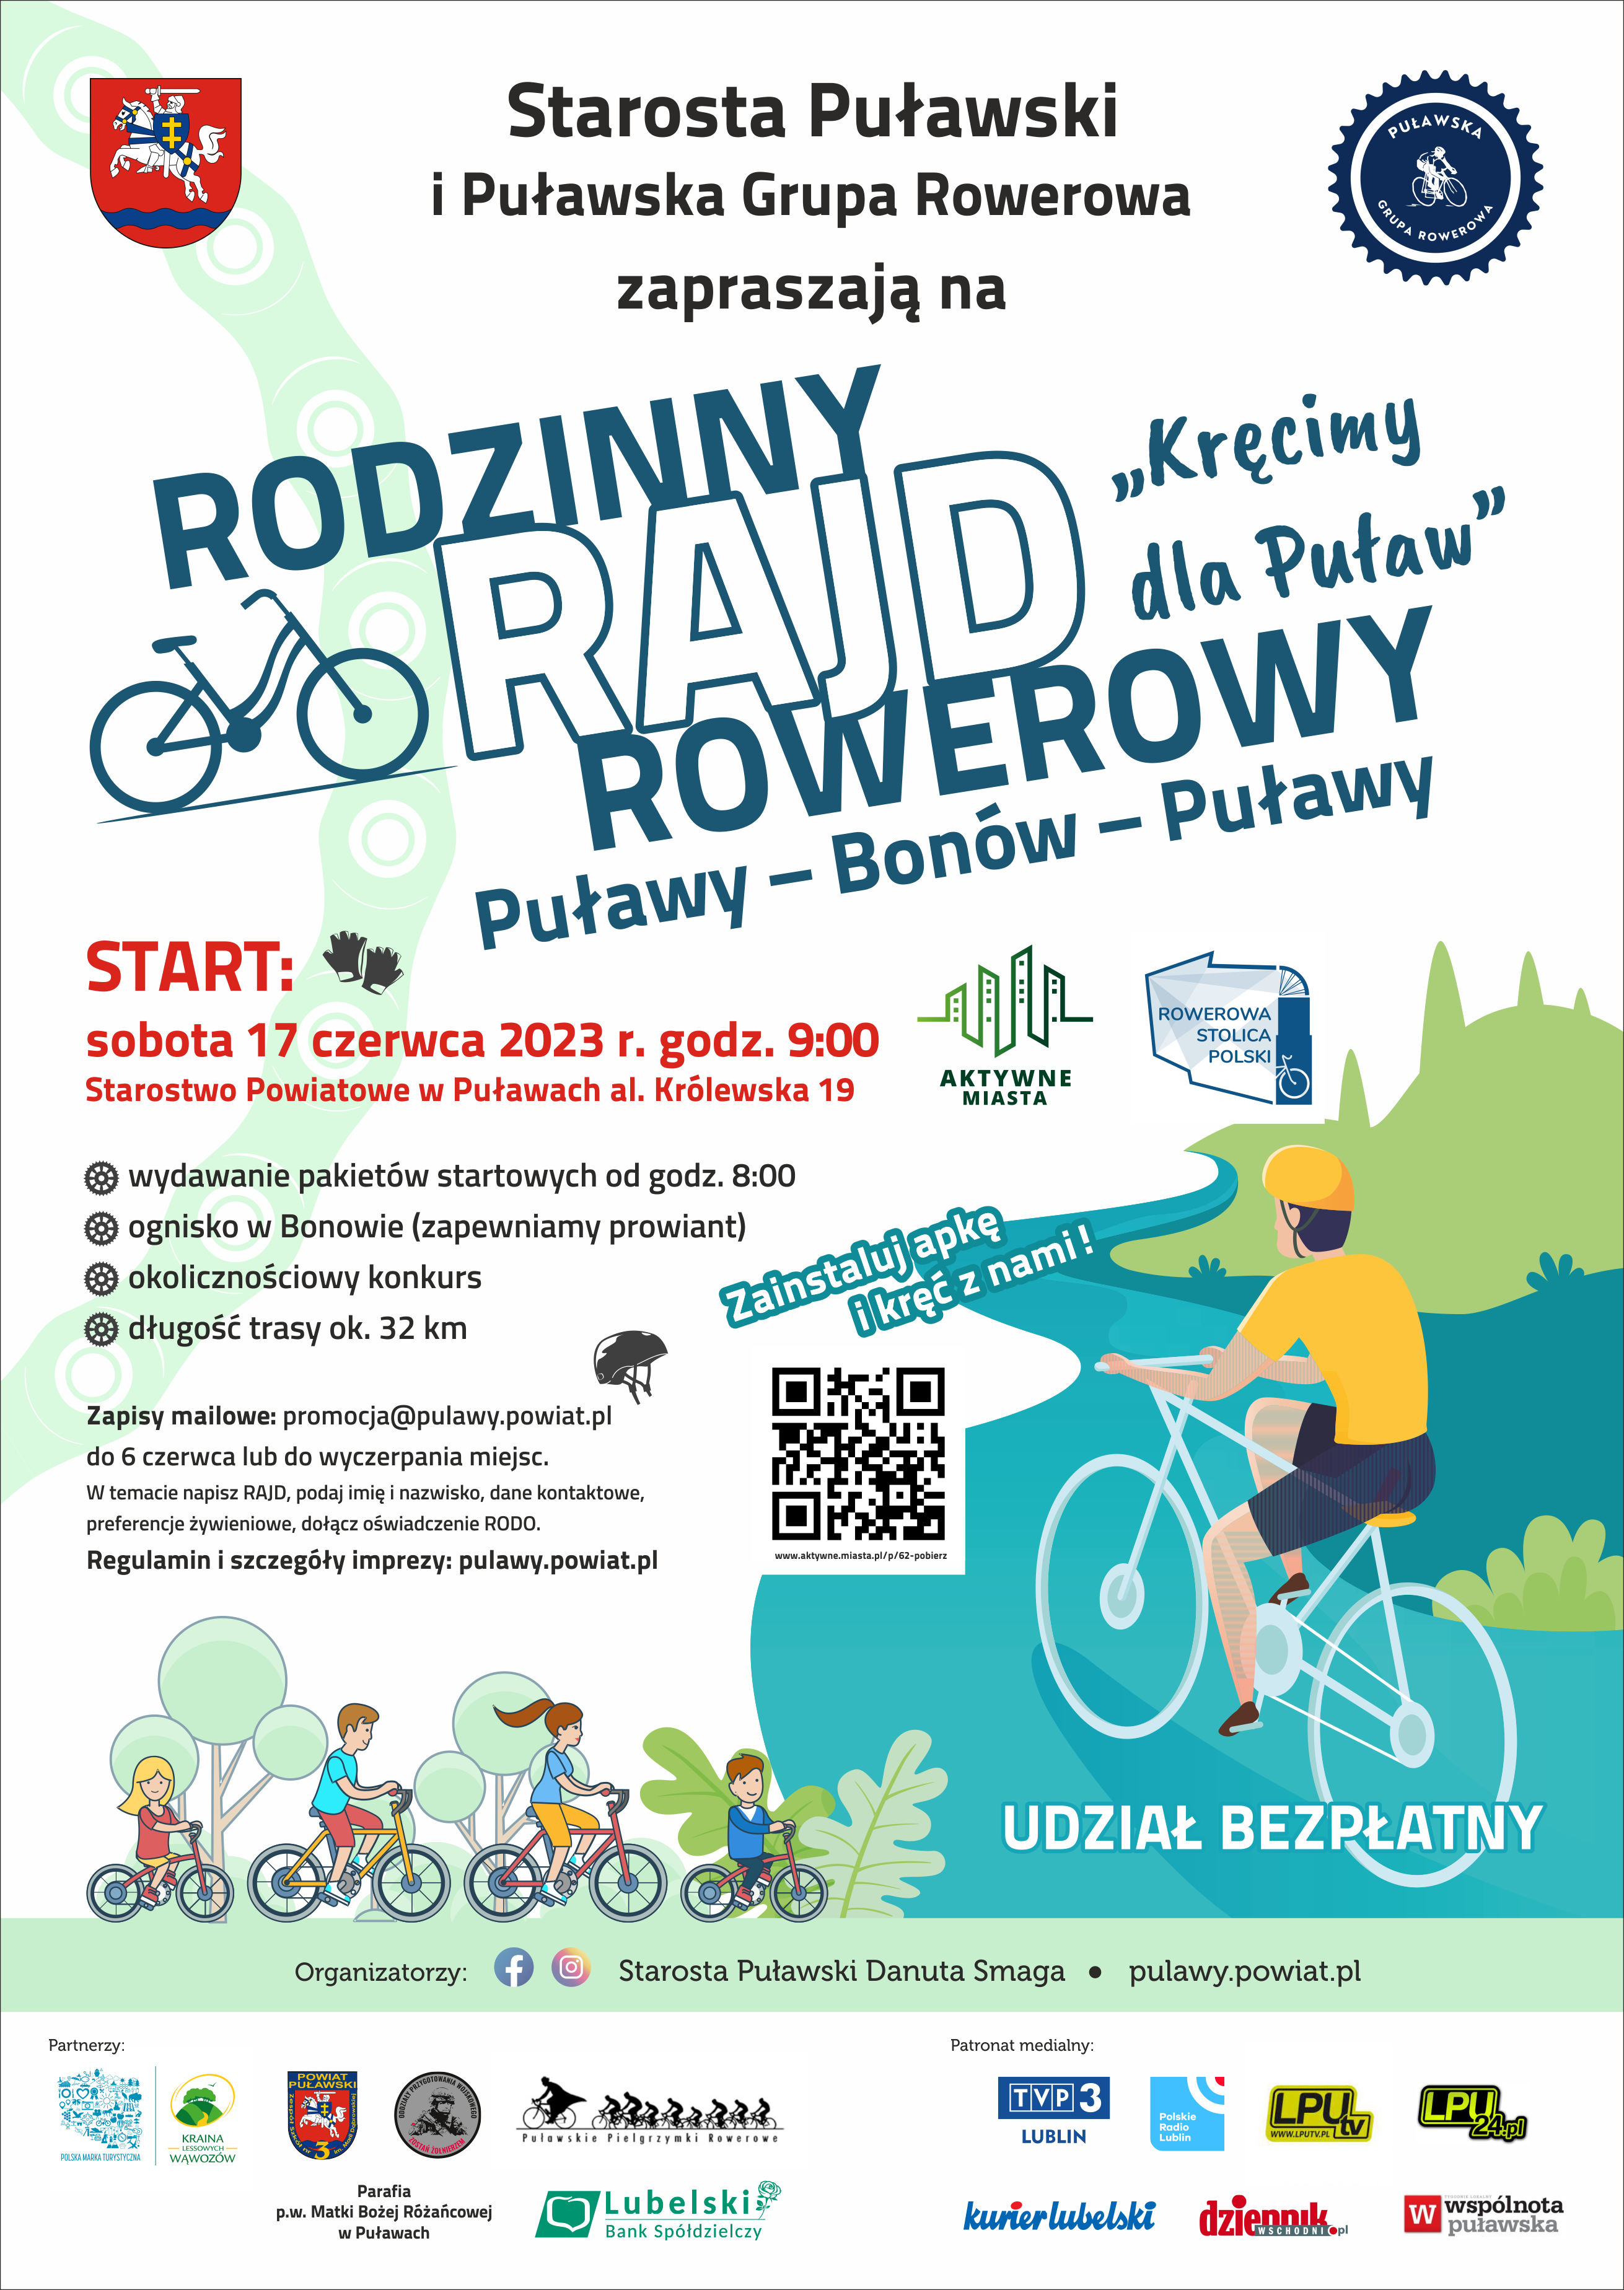 Rodzinny Rajd Rowerowy Puławy - Bonów - Puławy Kręcimy dla Puław